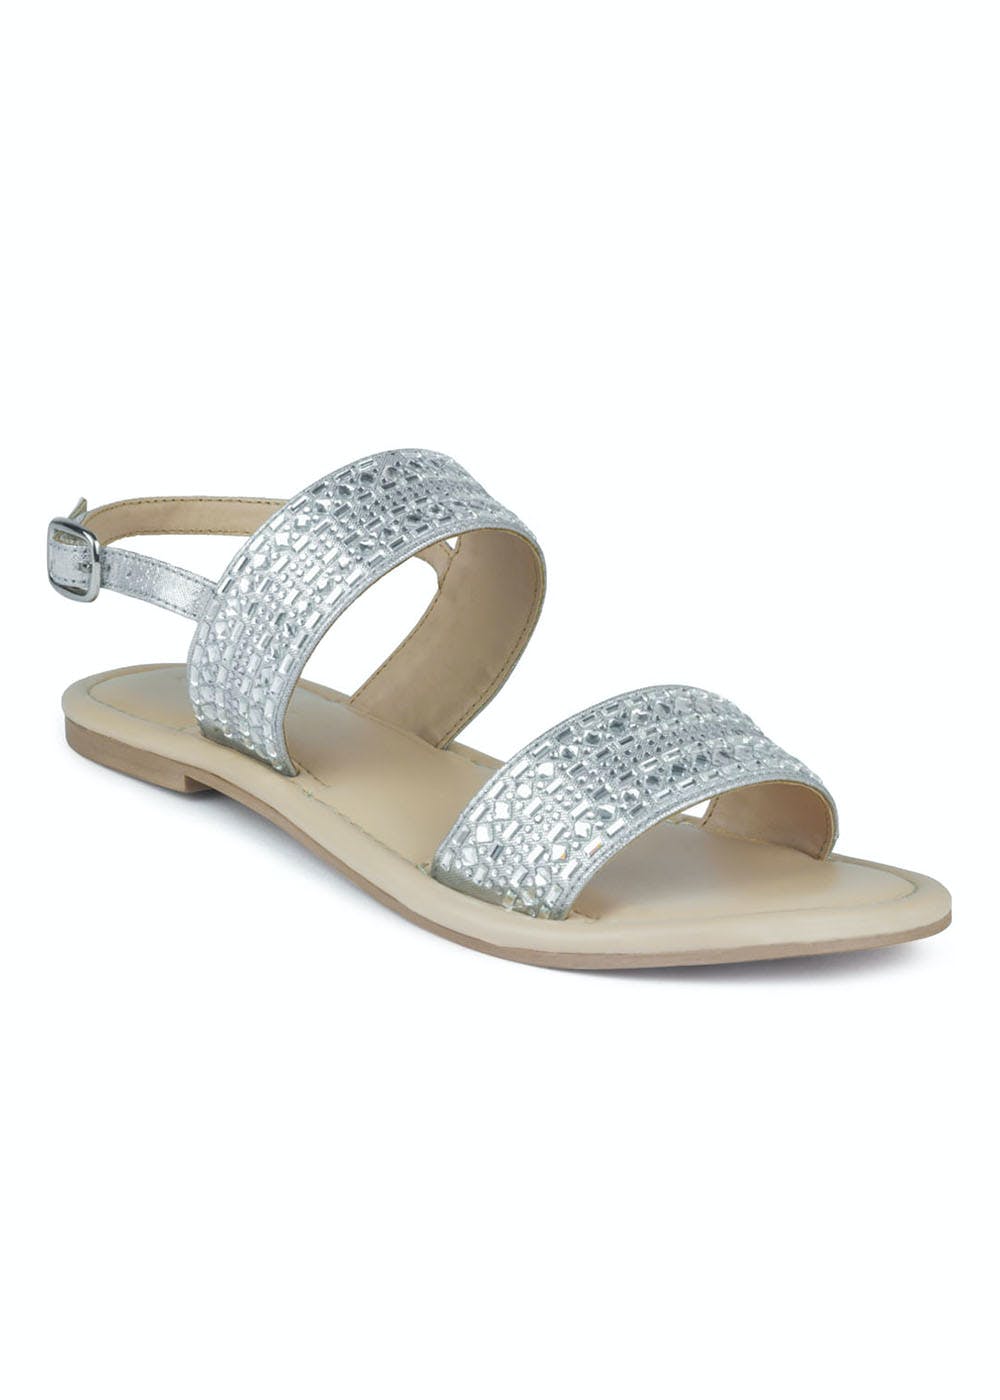 Get Silver Studded Slingback Sandal at ₹ 1319 | LBB Shop